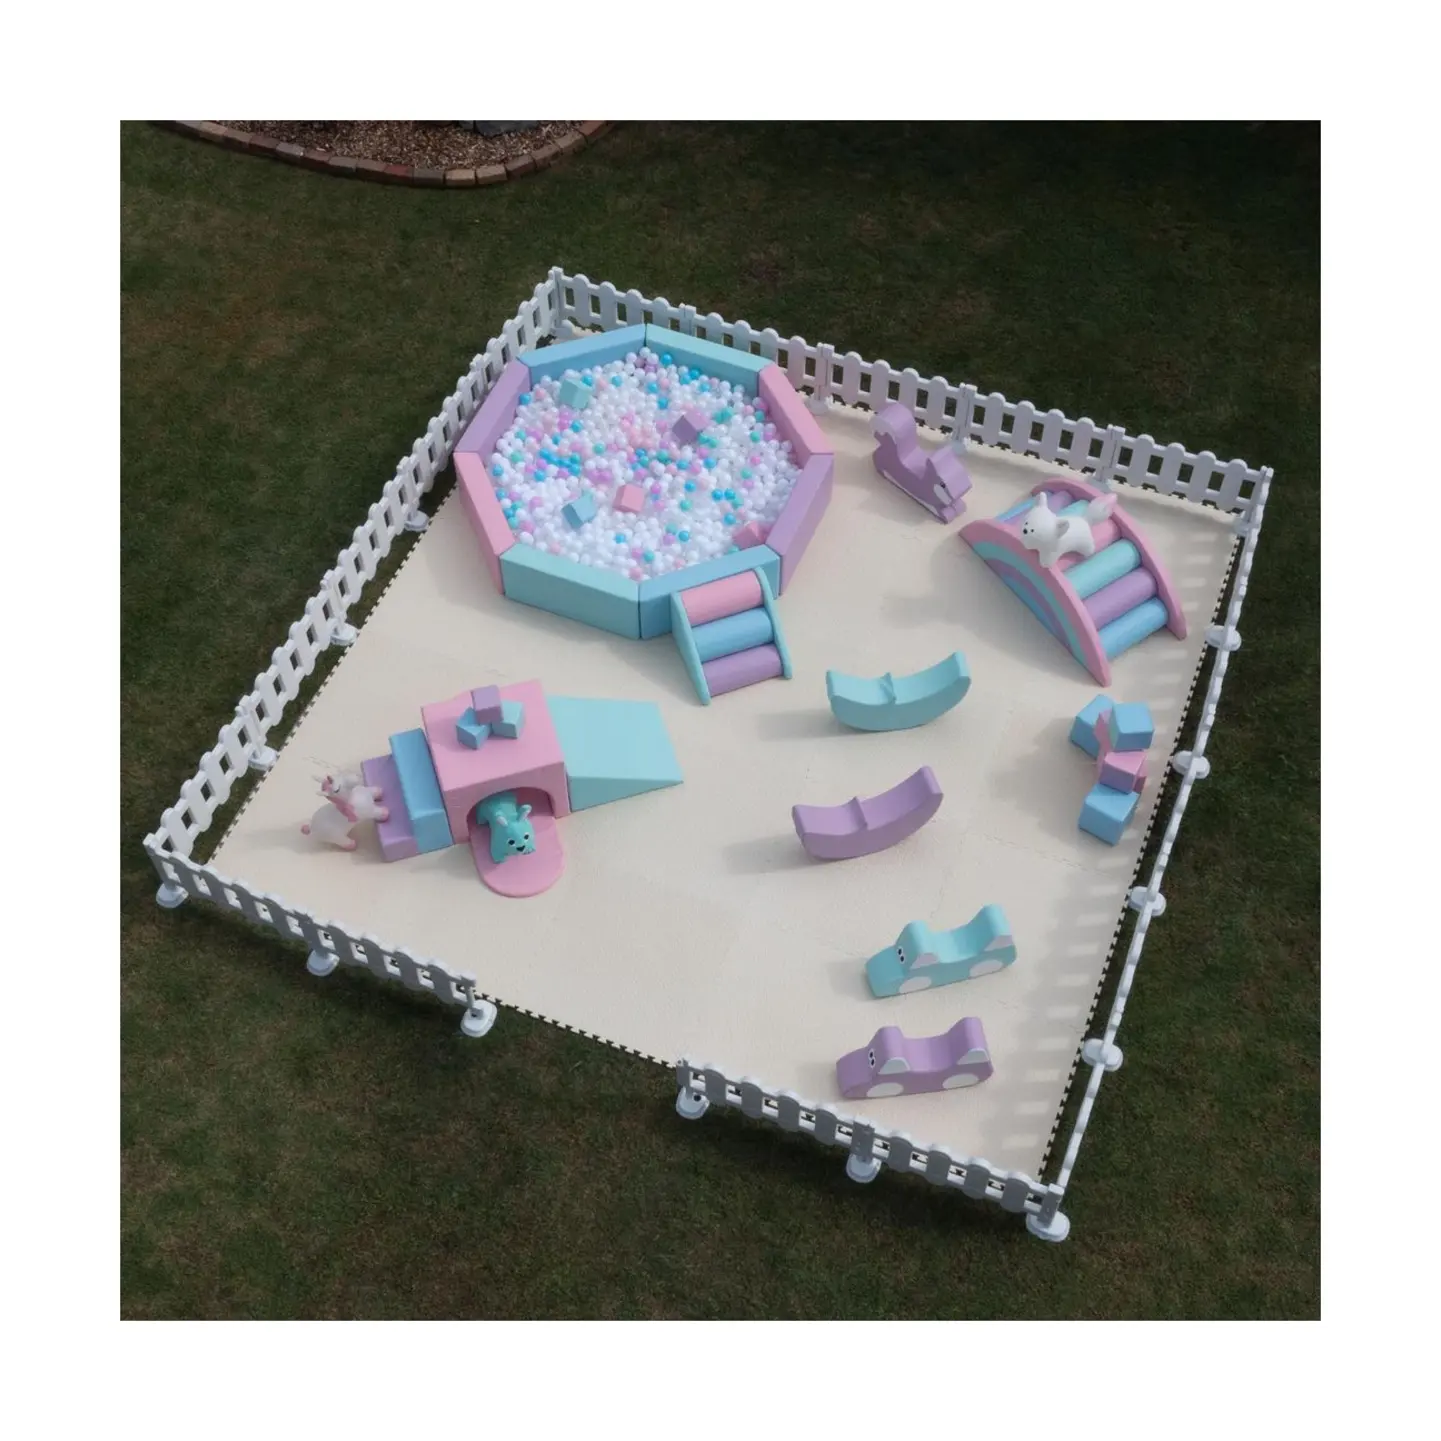 Oktagonal taman bermain Pastel anak-anak, perlengkapan dasar permainan lembut digunakan untuk dijual rencana bisnis mainan anak dalam ruangan lembut